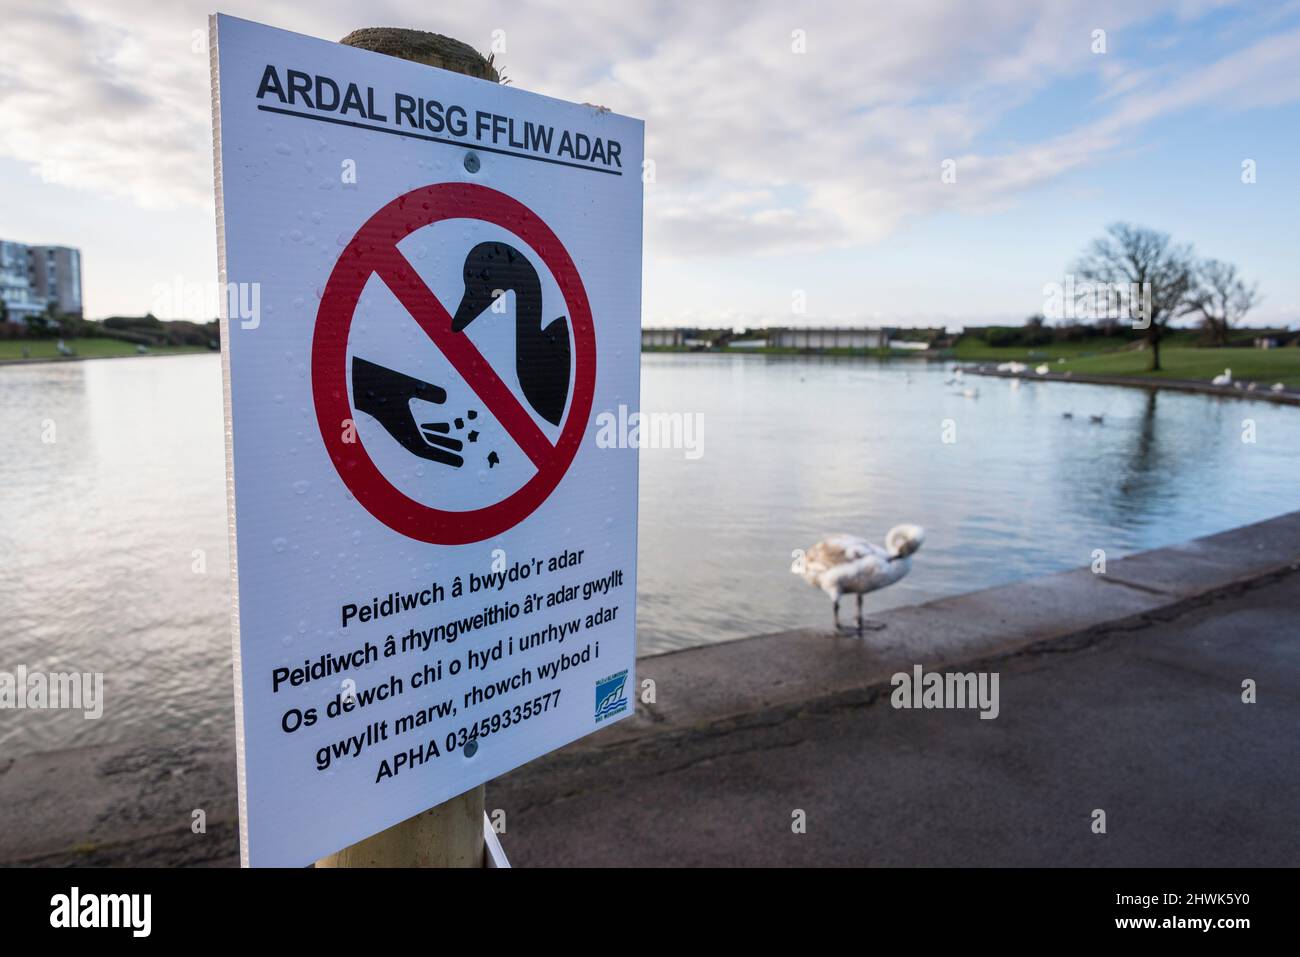 Ein temporäres Schild in Walisisch in einem öffentlichen Park warnt davor, dass die Avian-Grippe unter den Schwanen im Hintergrund zu sehen ist. Stockfoto